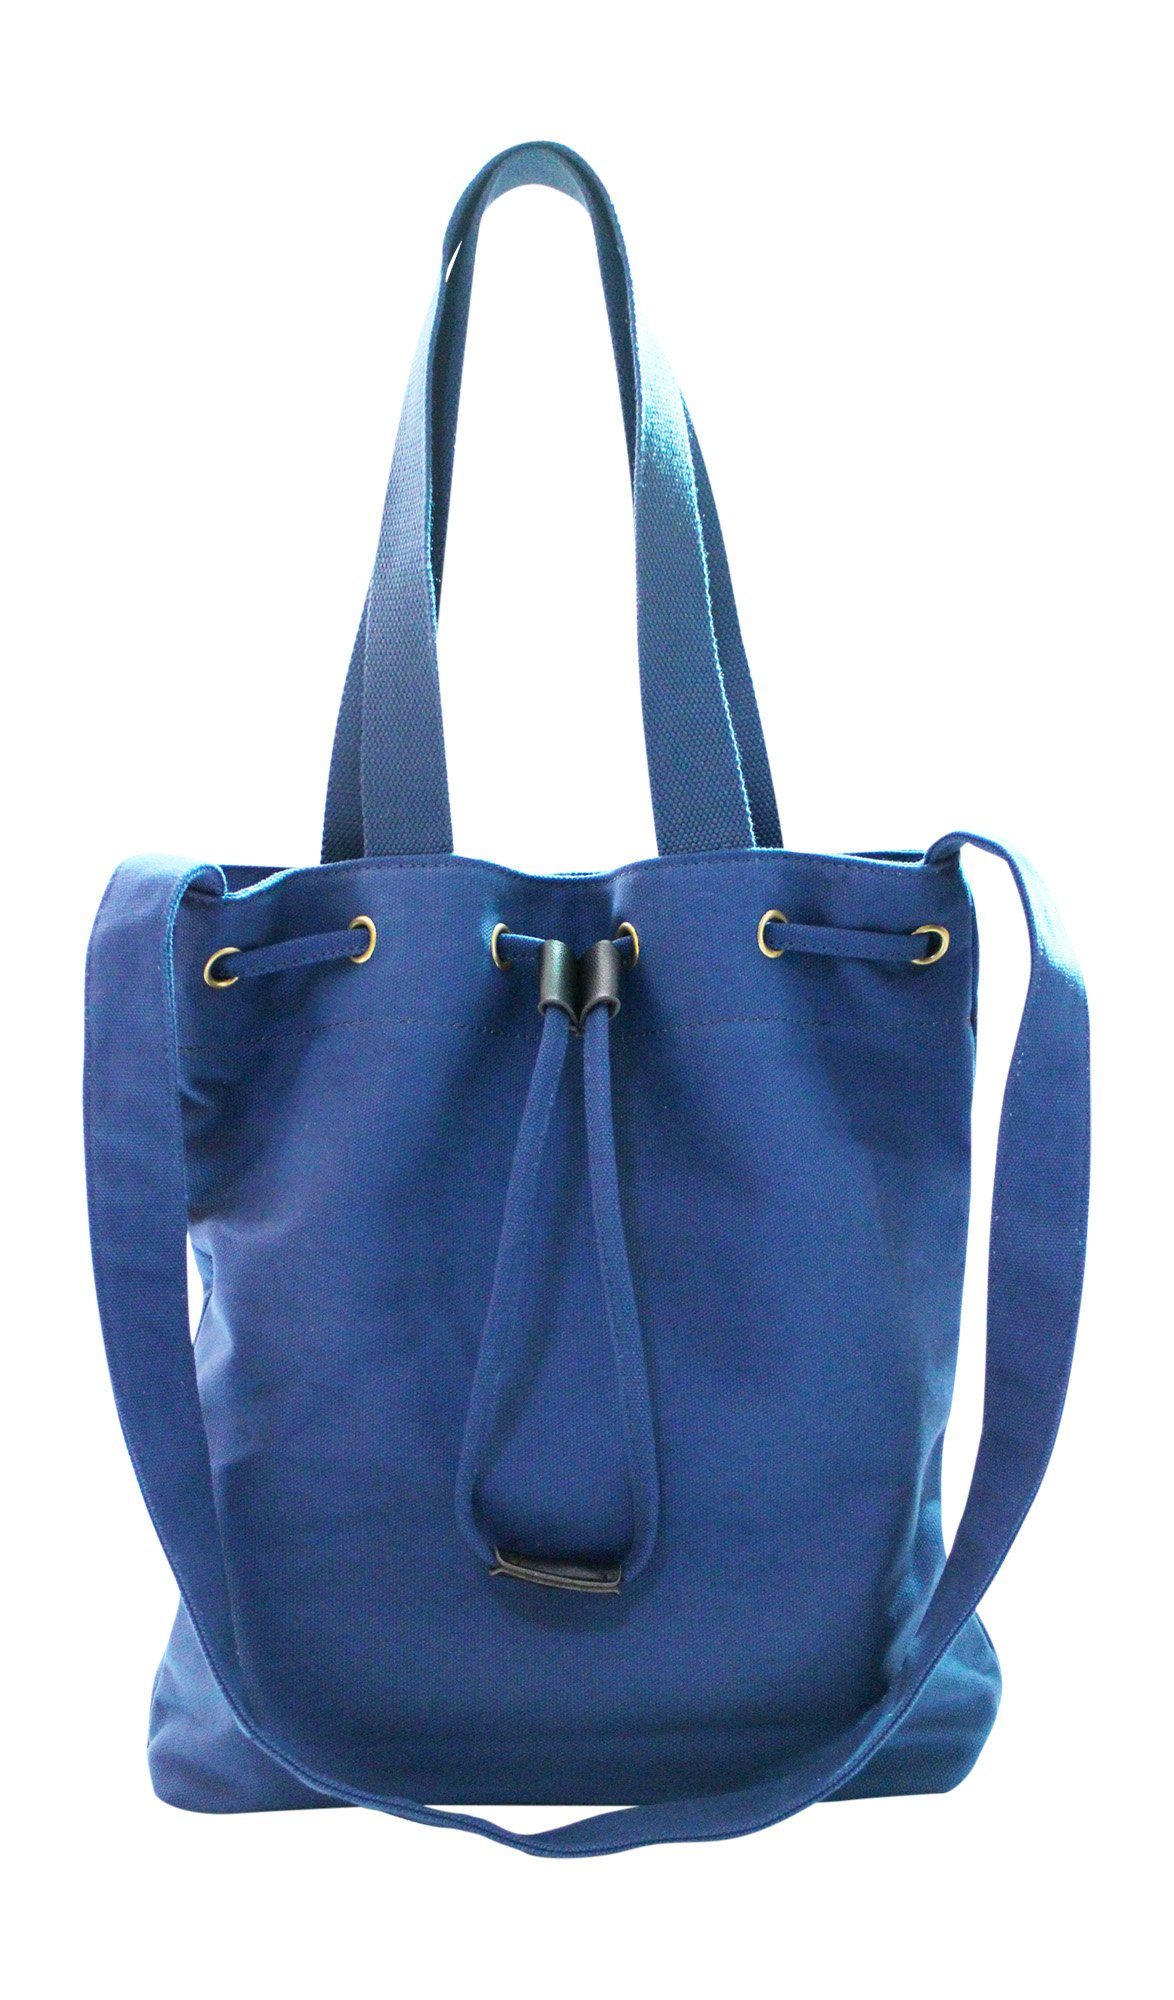 Tasche aus blauem Leder und Stoff